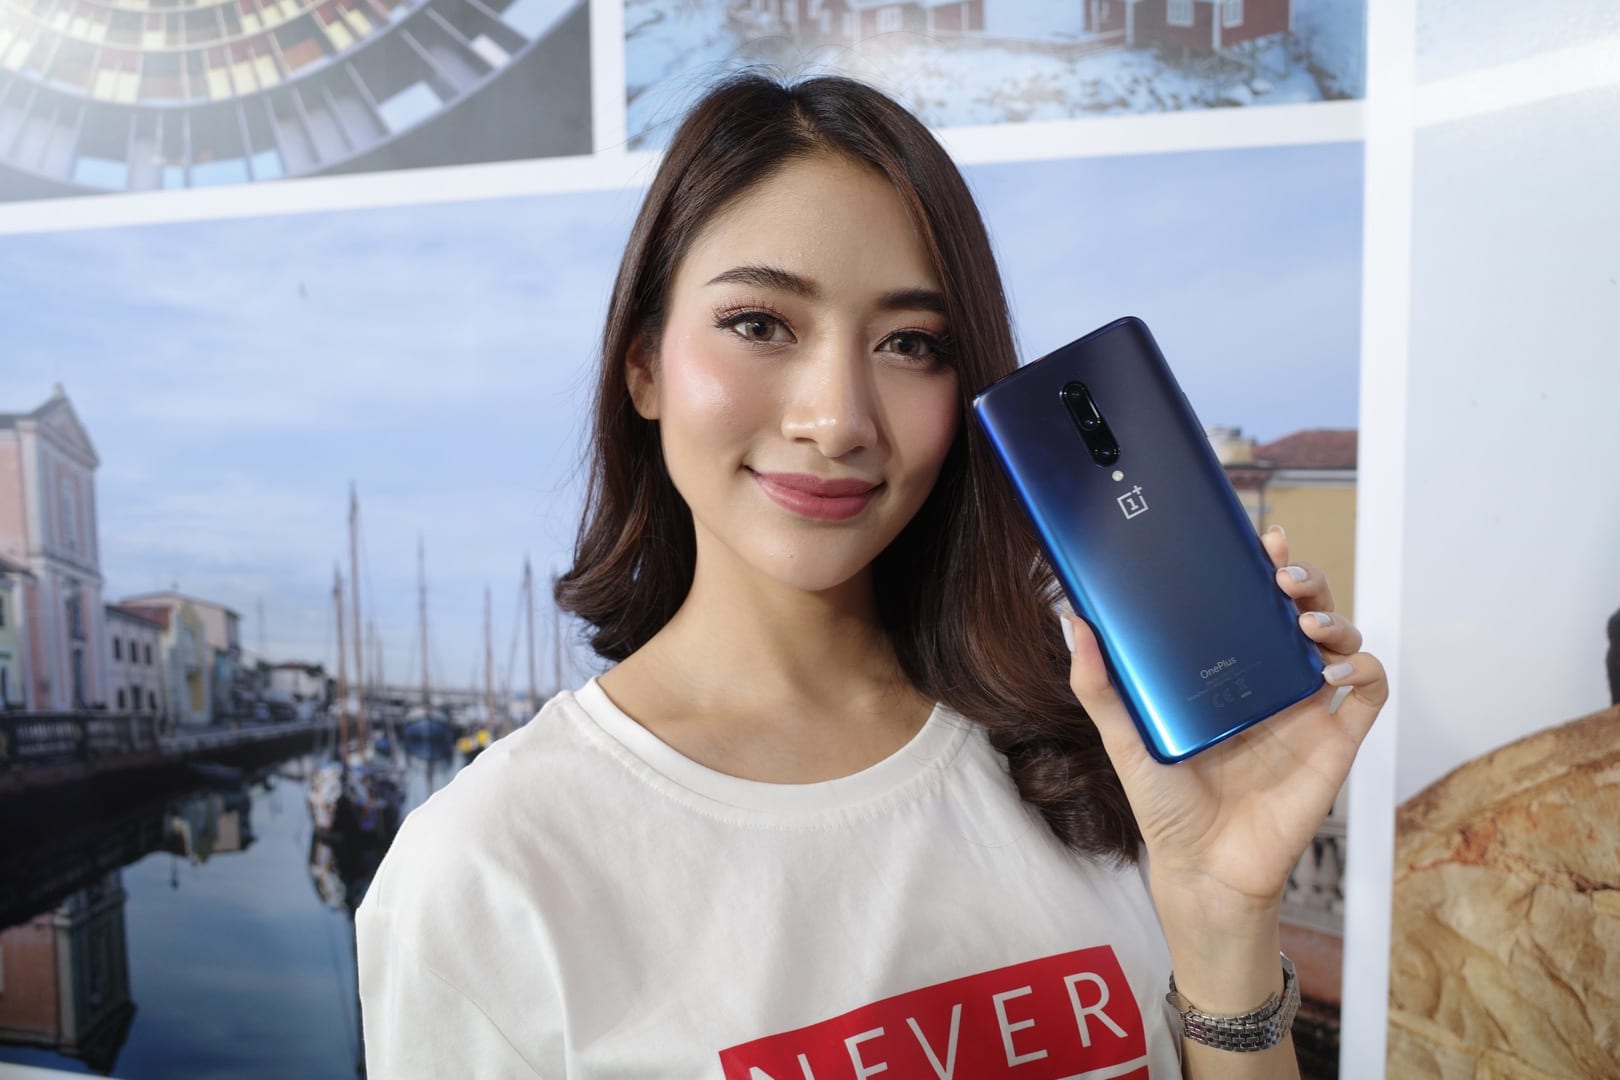 เปิดราคา OnePlus 7 Pro มือถือ Super Flagship ในไทย เริ่มต้น 24,900 บาท